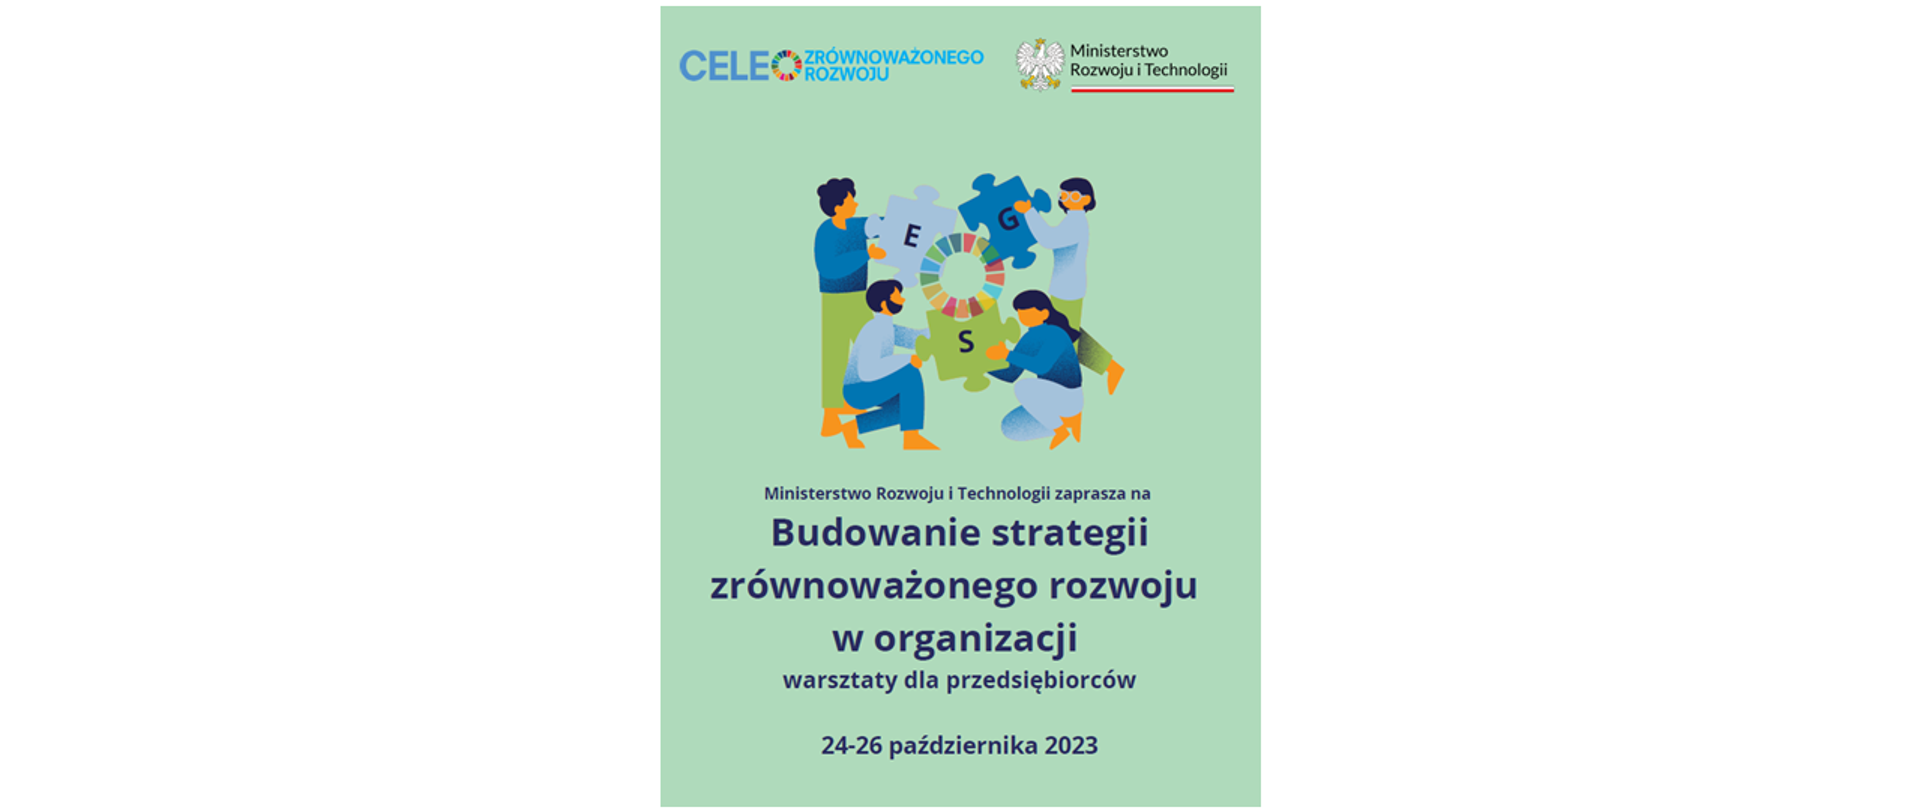 Plakat "Budowanie strategii zrównoważonego rozwoju w organizacji - warsztaty"